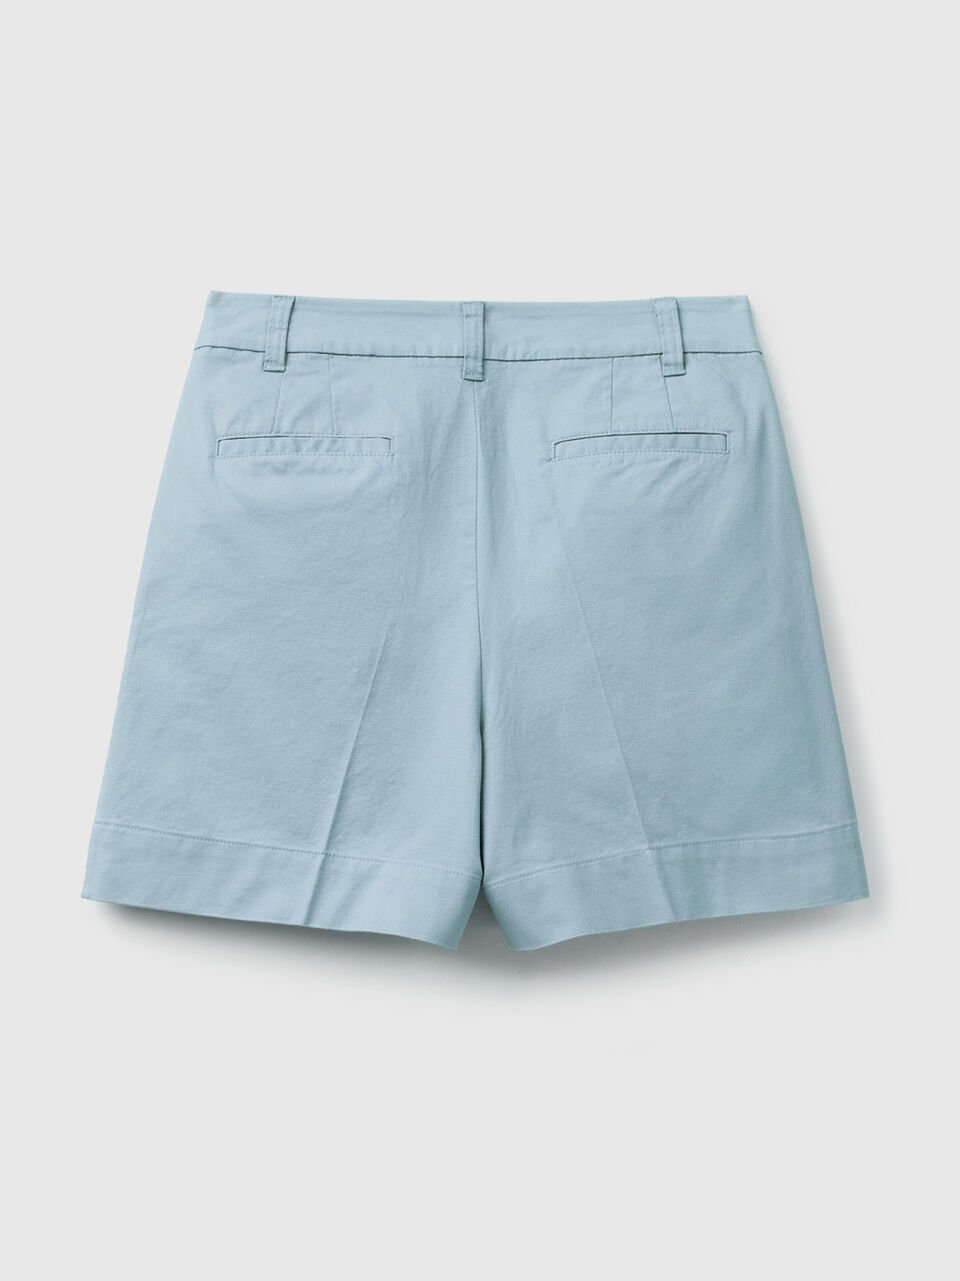 (image for) Shorts in cotone elasticizzato benetton it saldi